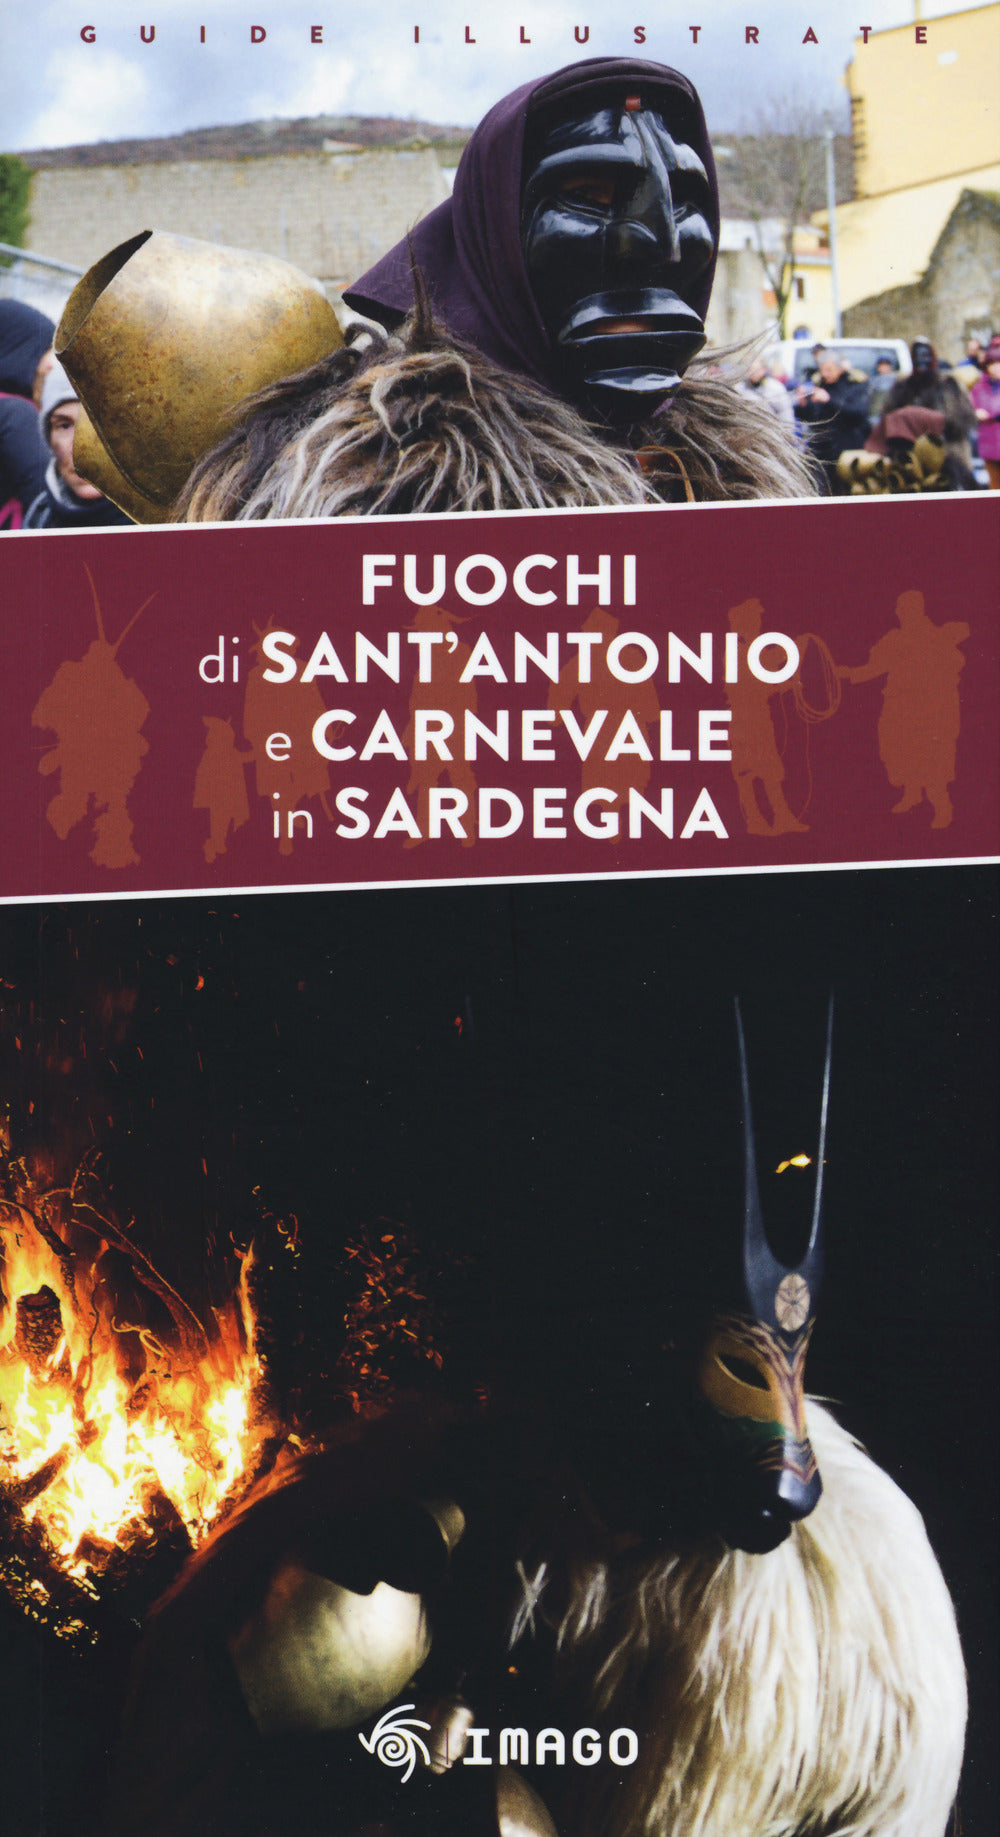 Fuochi di Sant'Antonio e Carnevale in Sardegna.